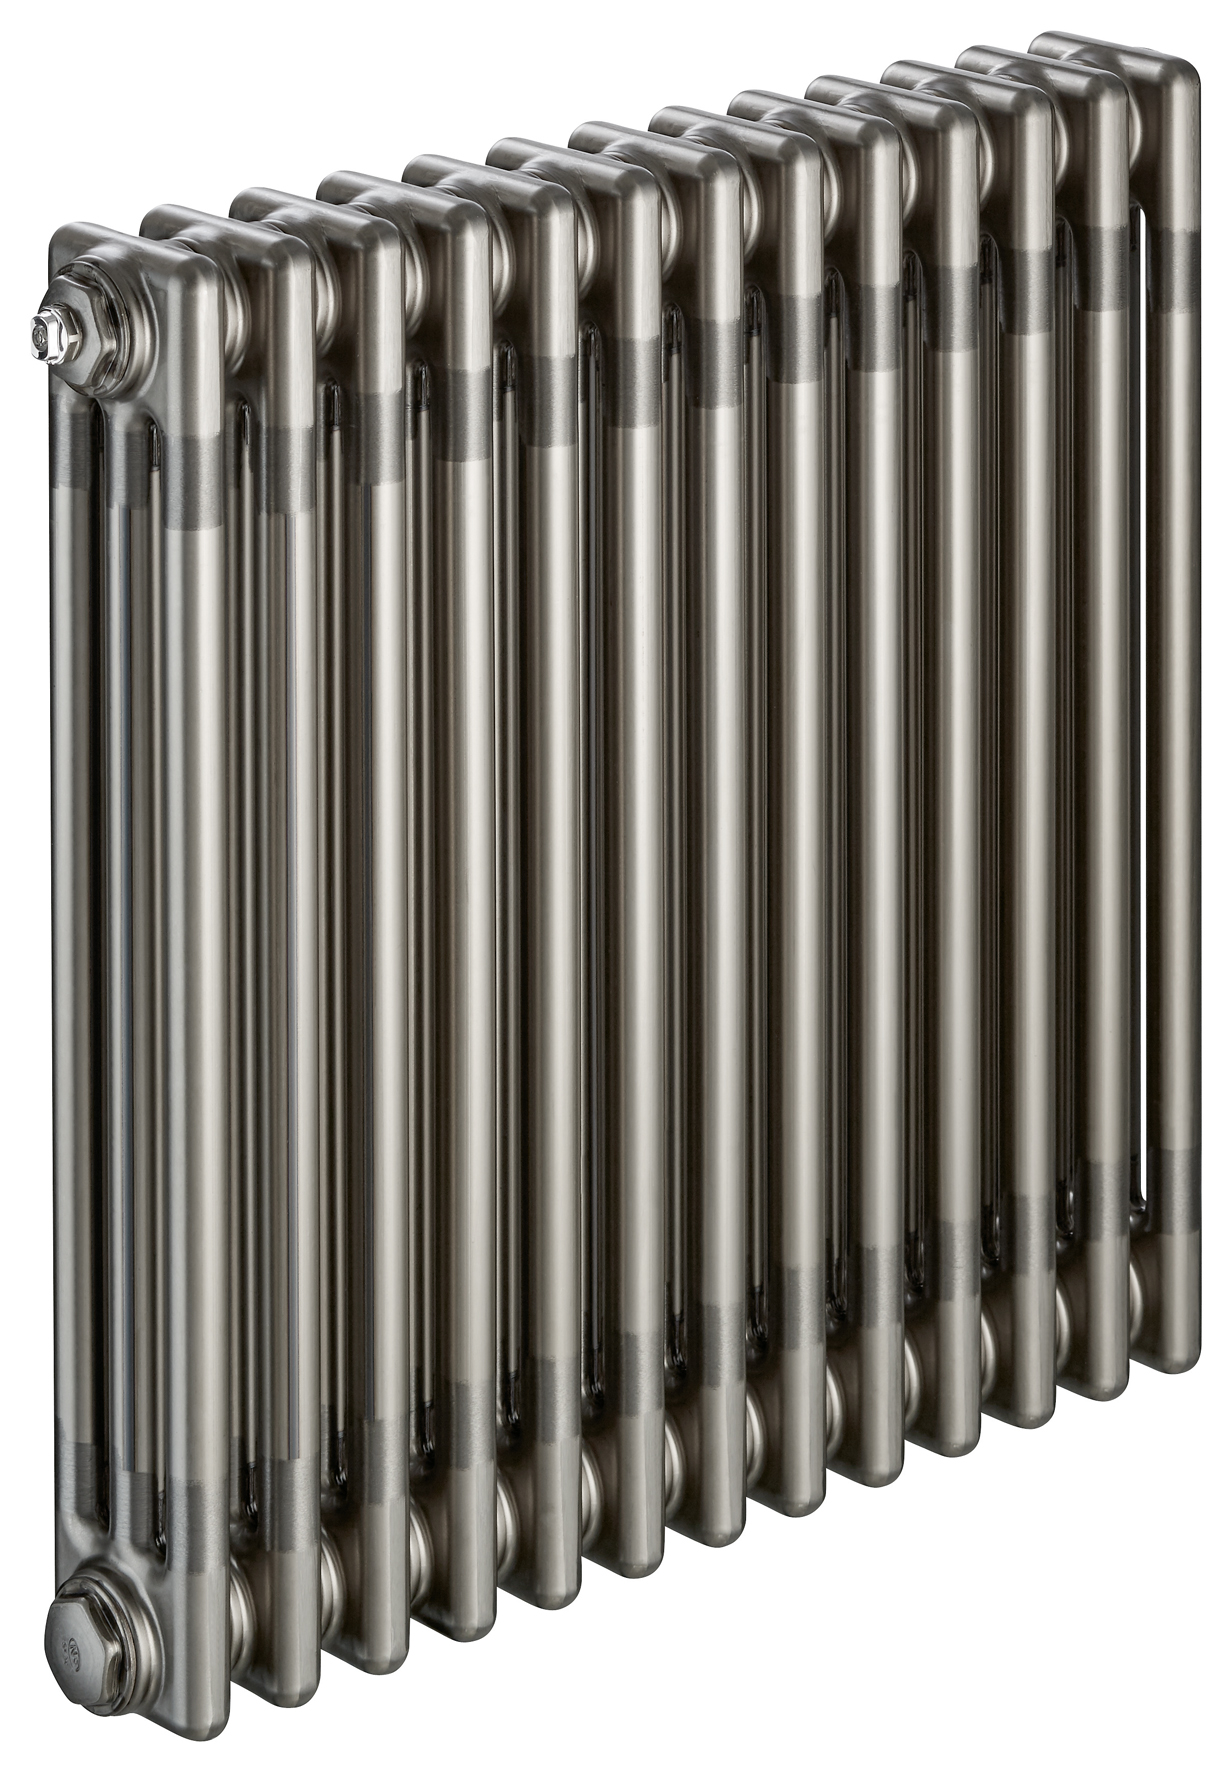 Nouvelles finitions exclusives Zehnder pour des radiateurs au style industriel